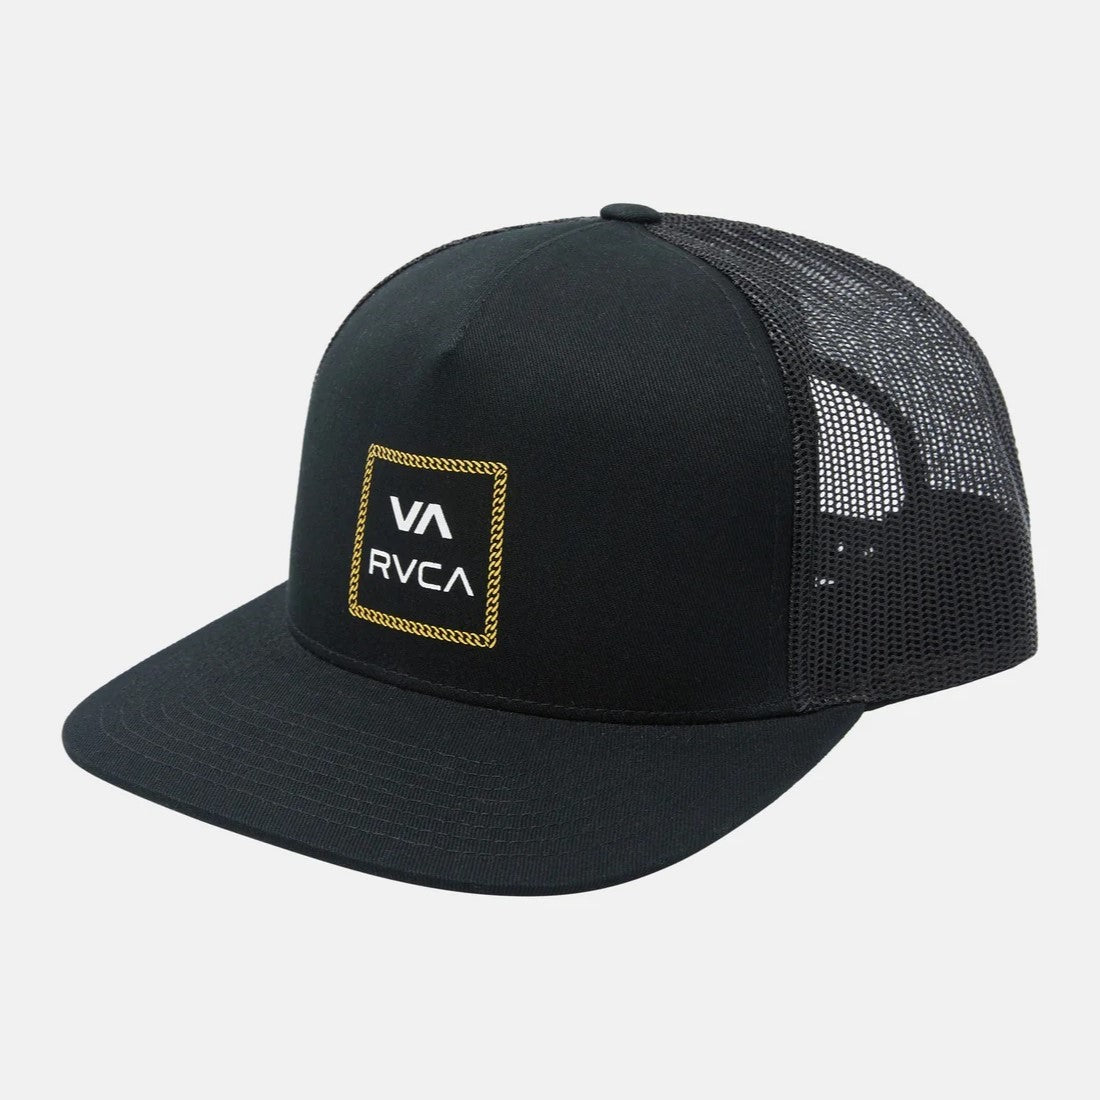 RVCA Mens VA ATW Print Trucker Hat